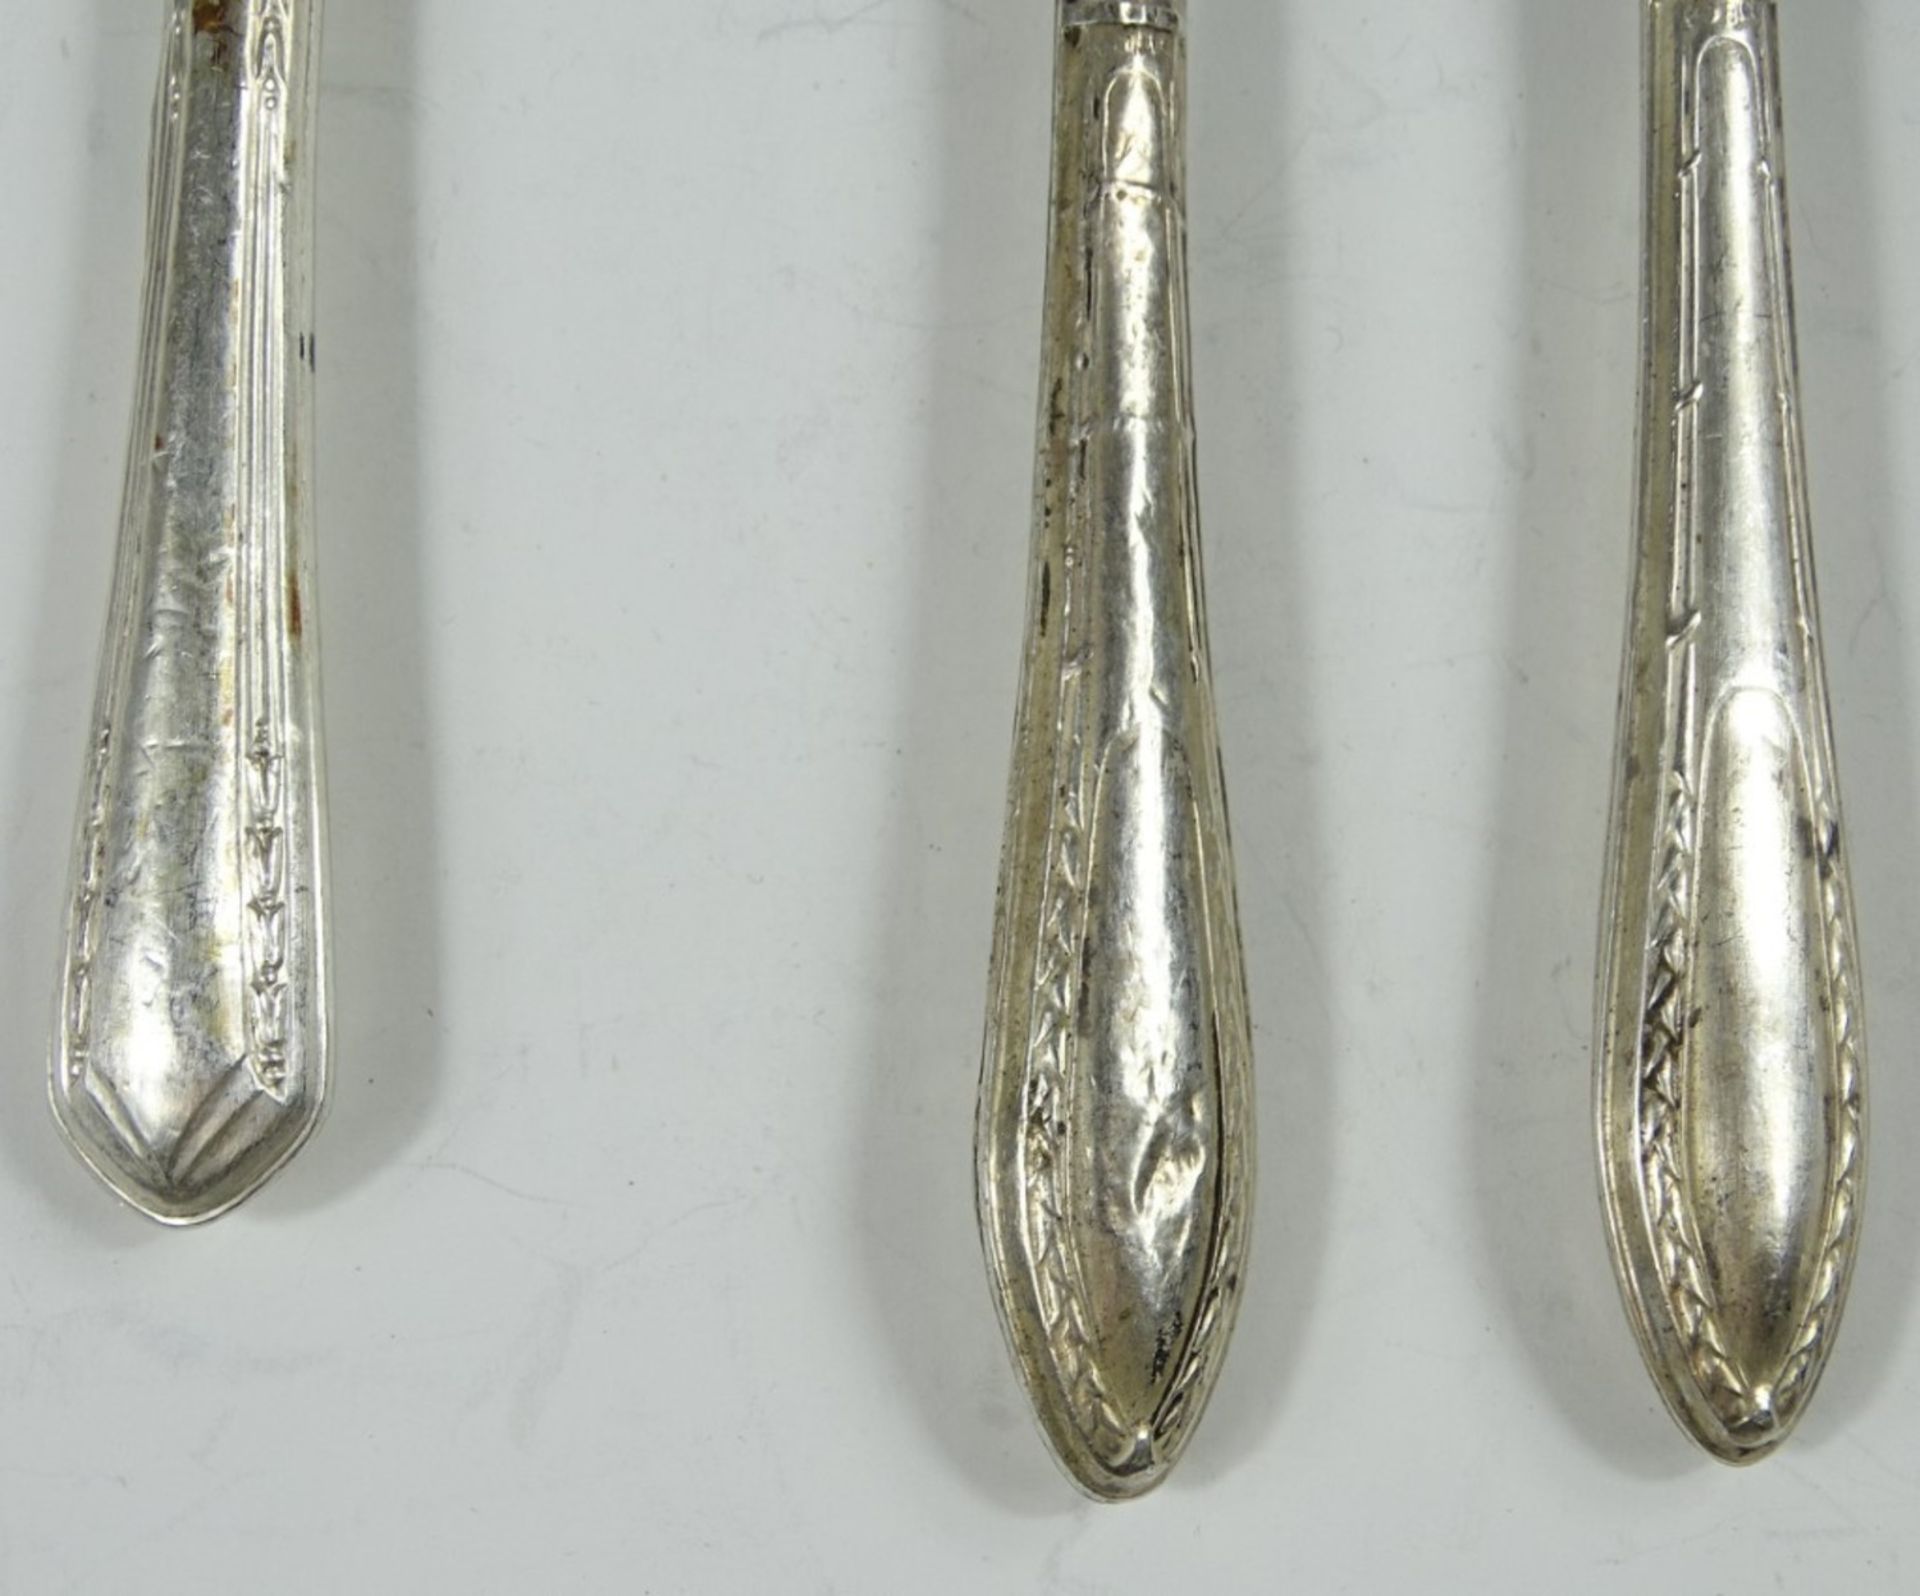 3 alte Vorlegeteile mit 800er-Silbergriffen, zus. 84 gr., L. 17,5-20,5 cm, deutliche Altersspuren - Image 2 of 5